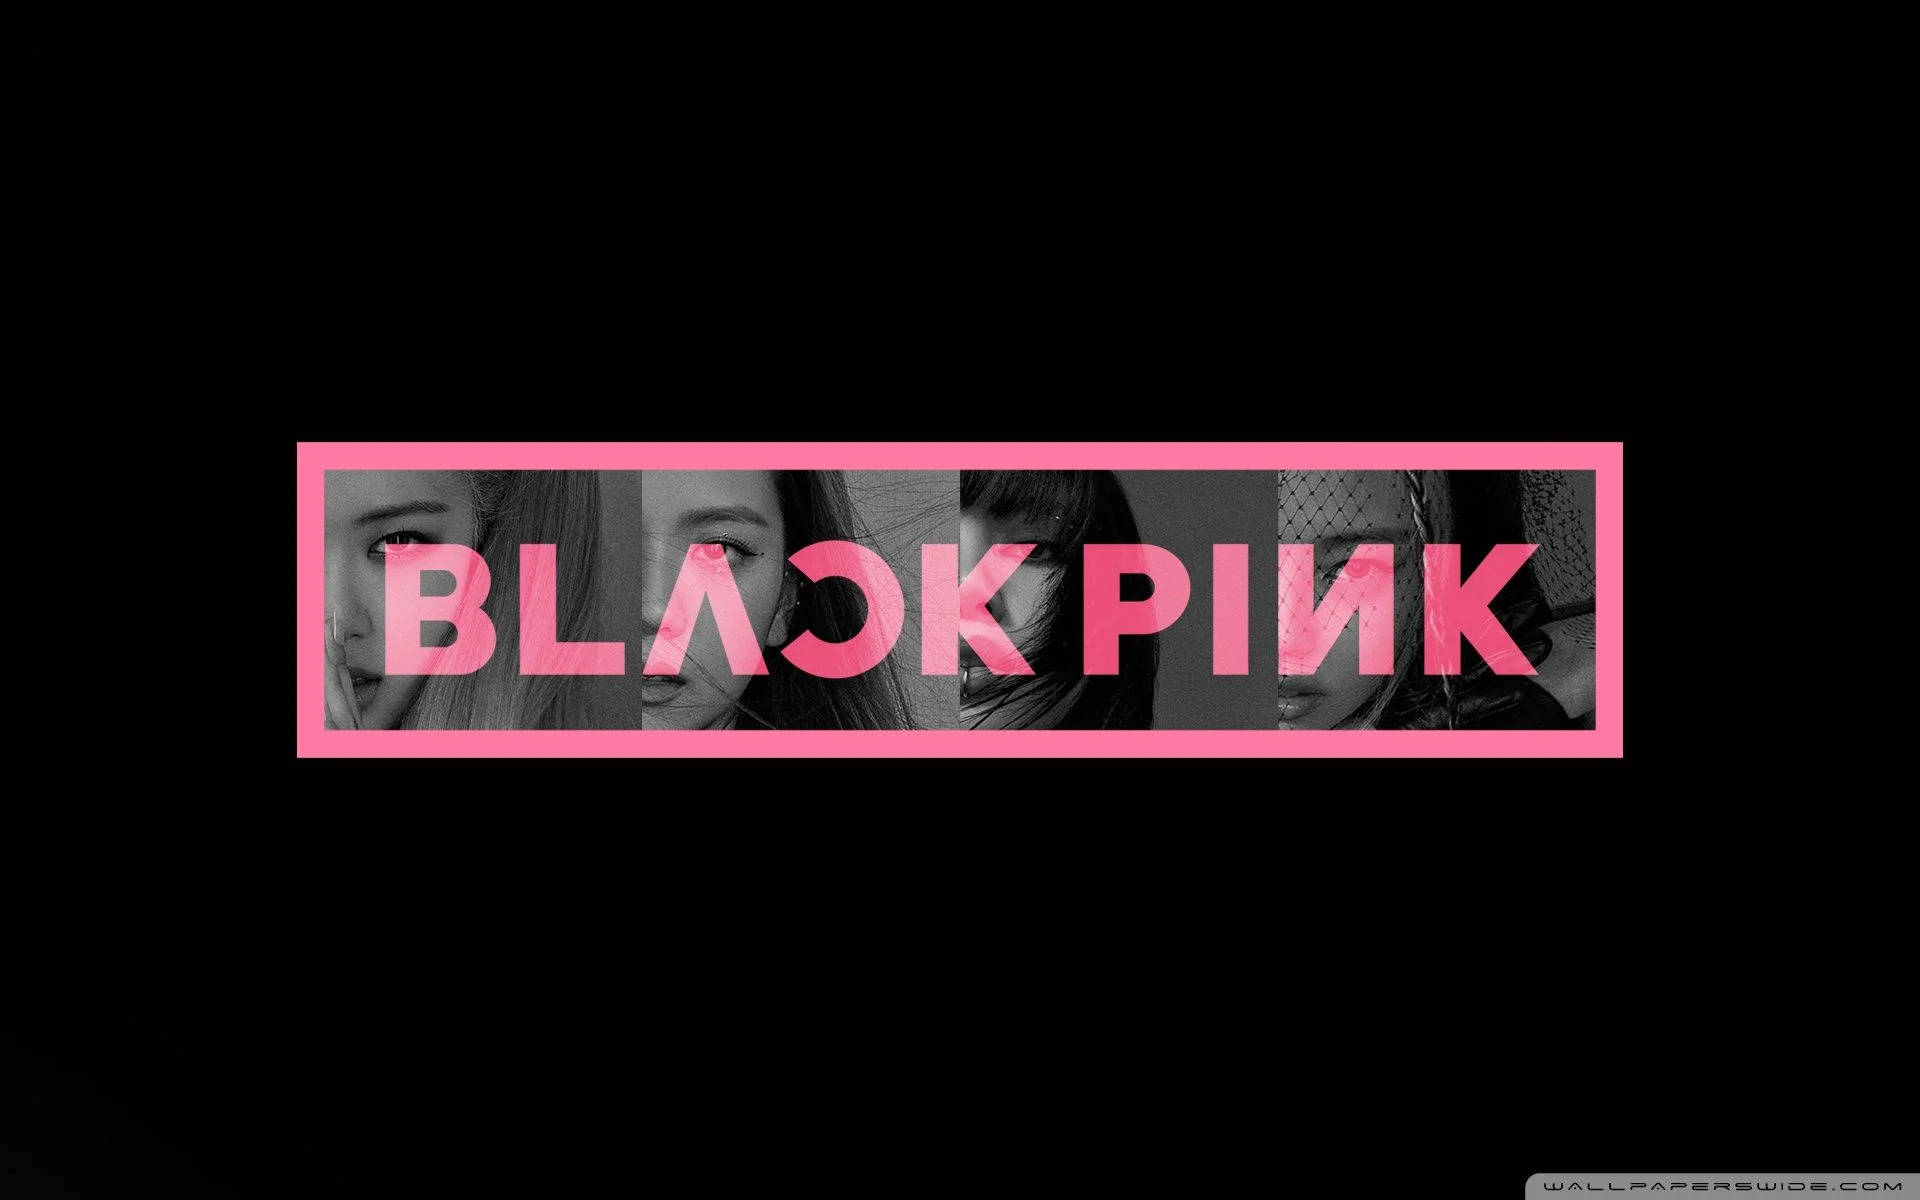 Blackpink's Iconic Logo